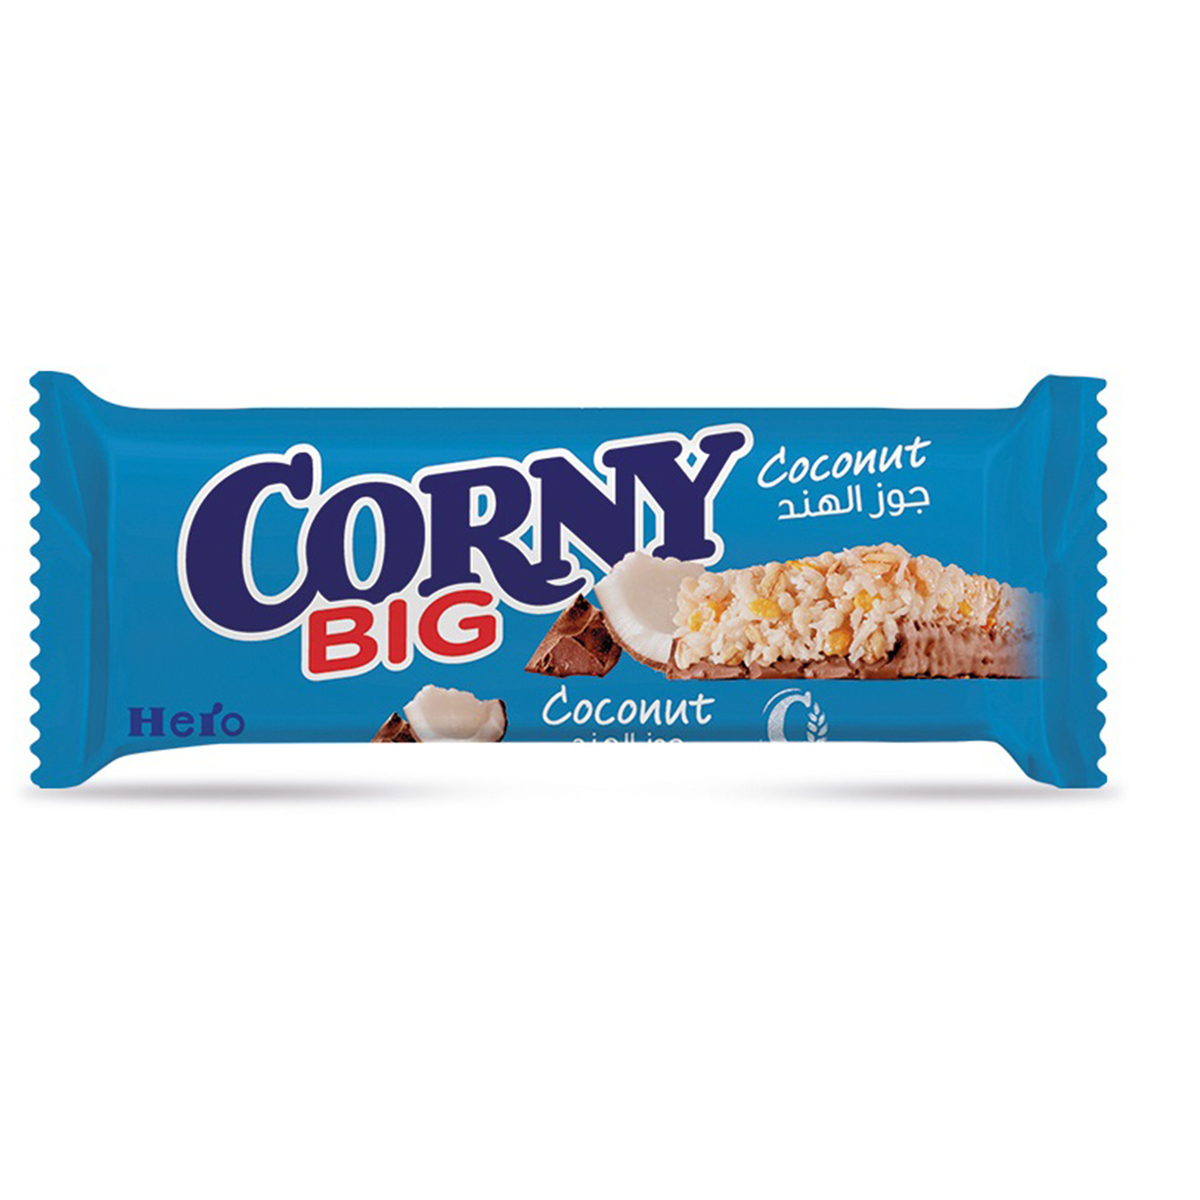 Corny Big Coconut Cereal Bar